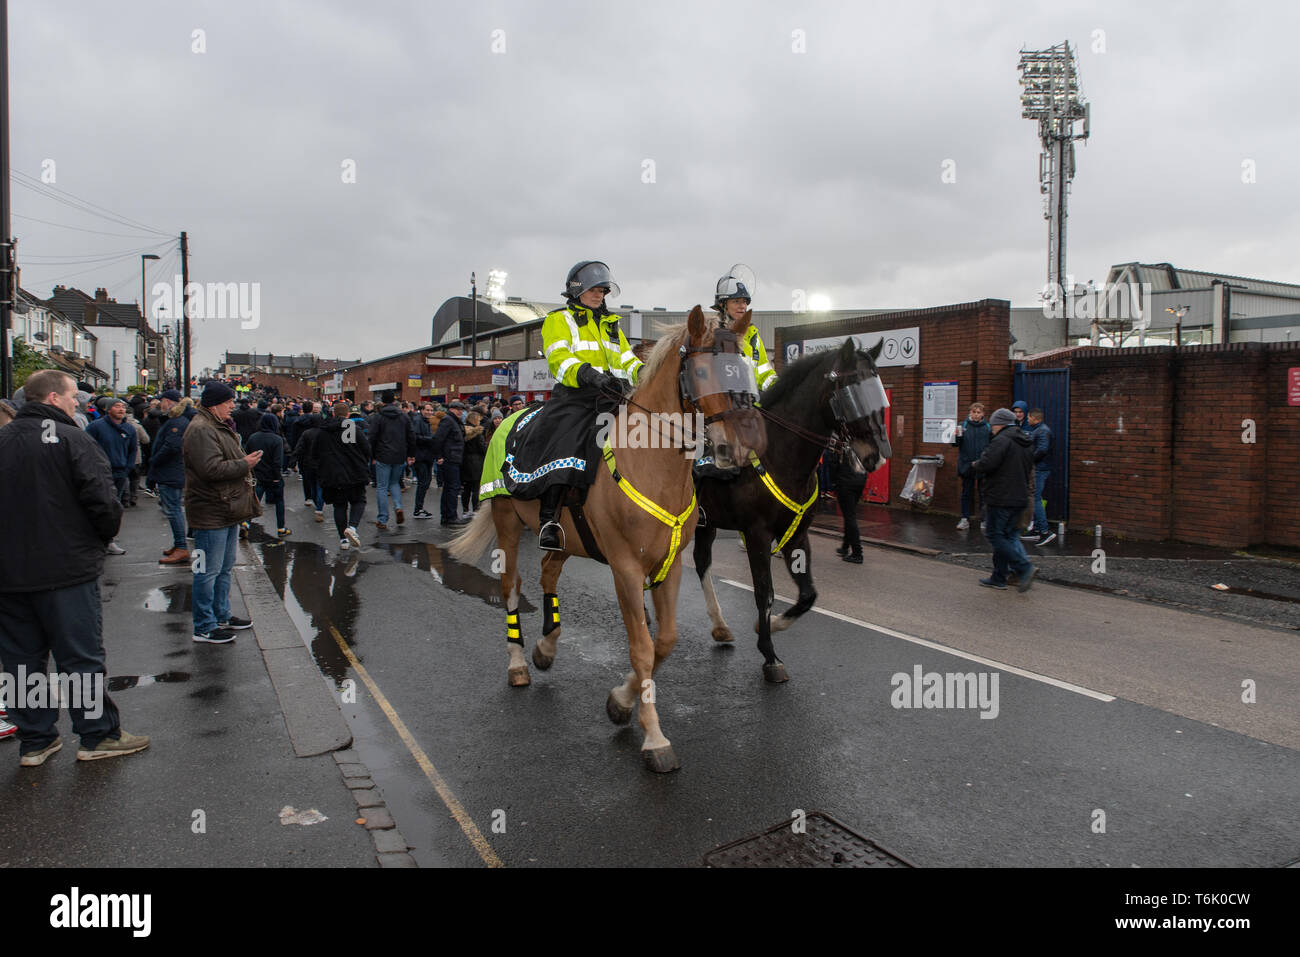 Femminile a cavallo a una partita di calcio a Selhurst Park, il Crystal Palace di casa prima di un tirante con il Tottenham Hotspur. /Polizia à Cheval avant le mat Foto Stock